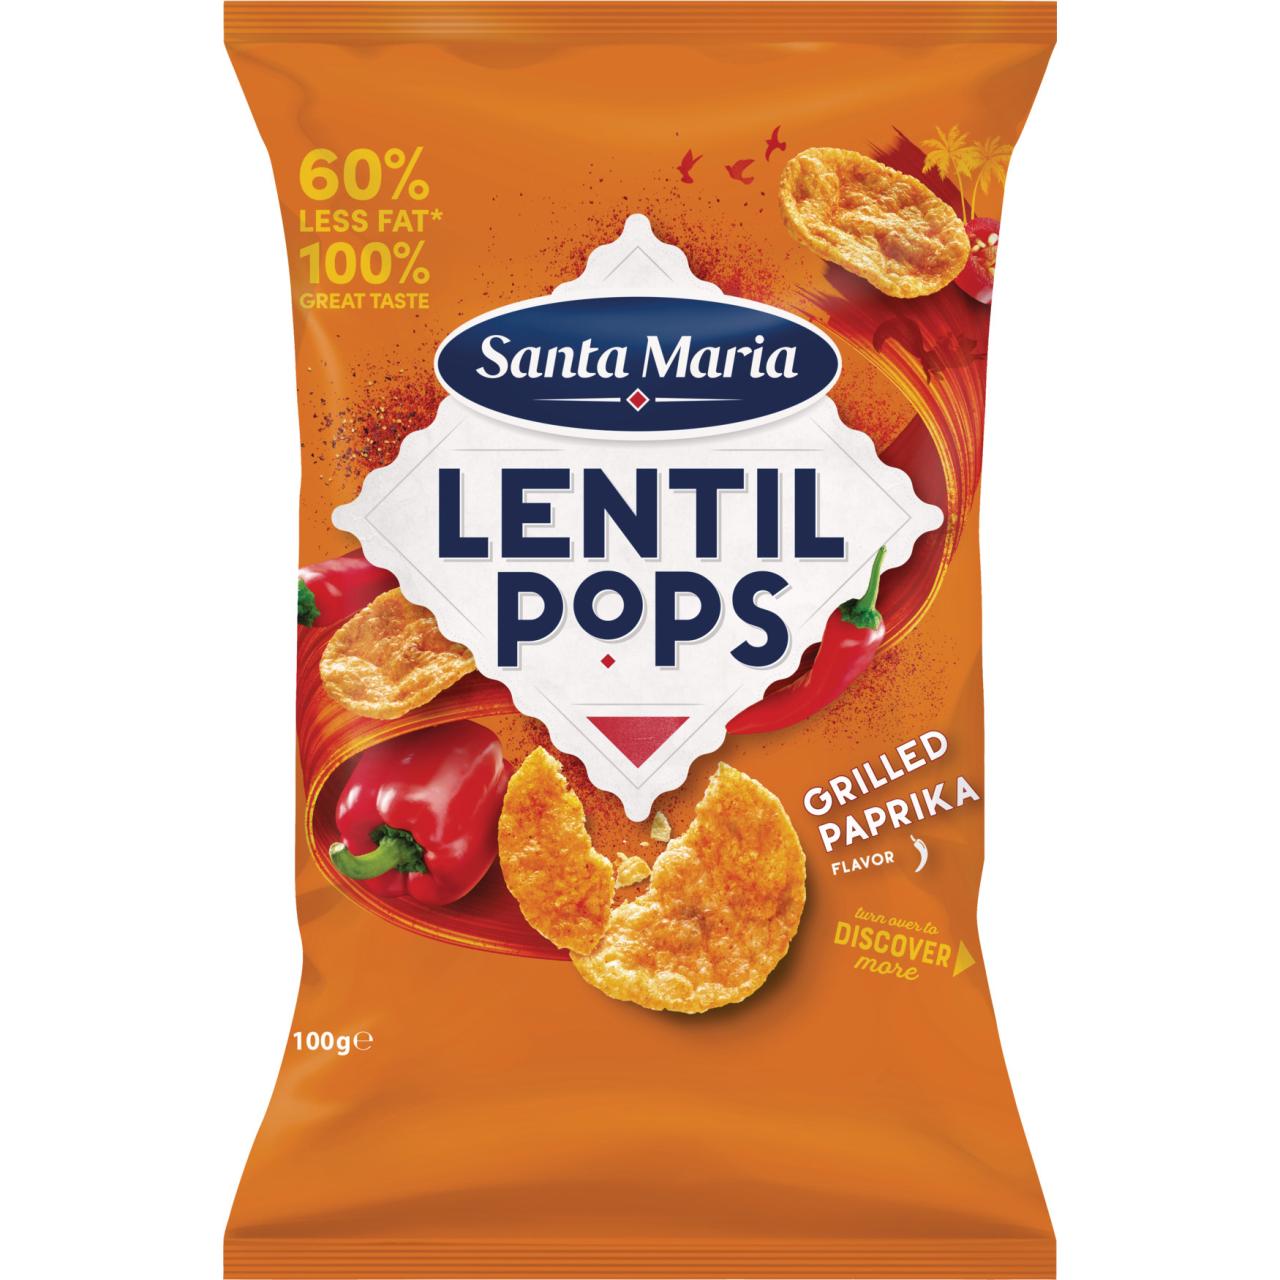 Santa Maria Lentil Pops Grilled Paprika 100g